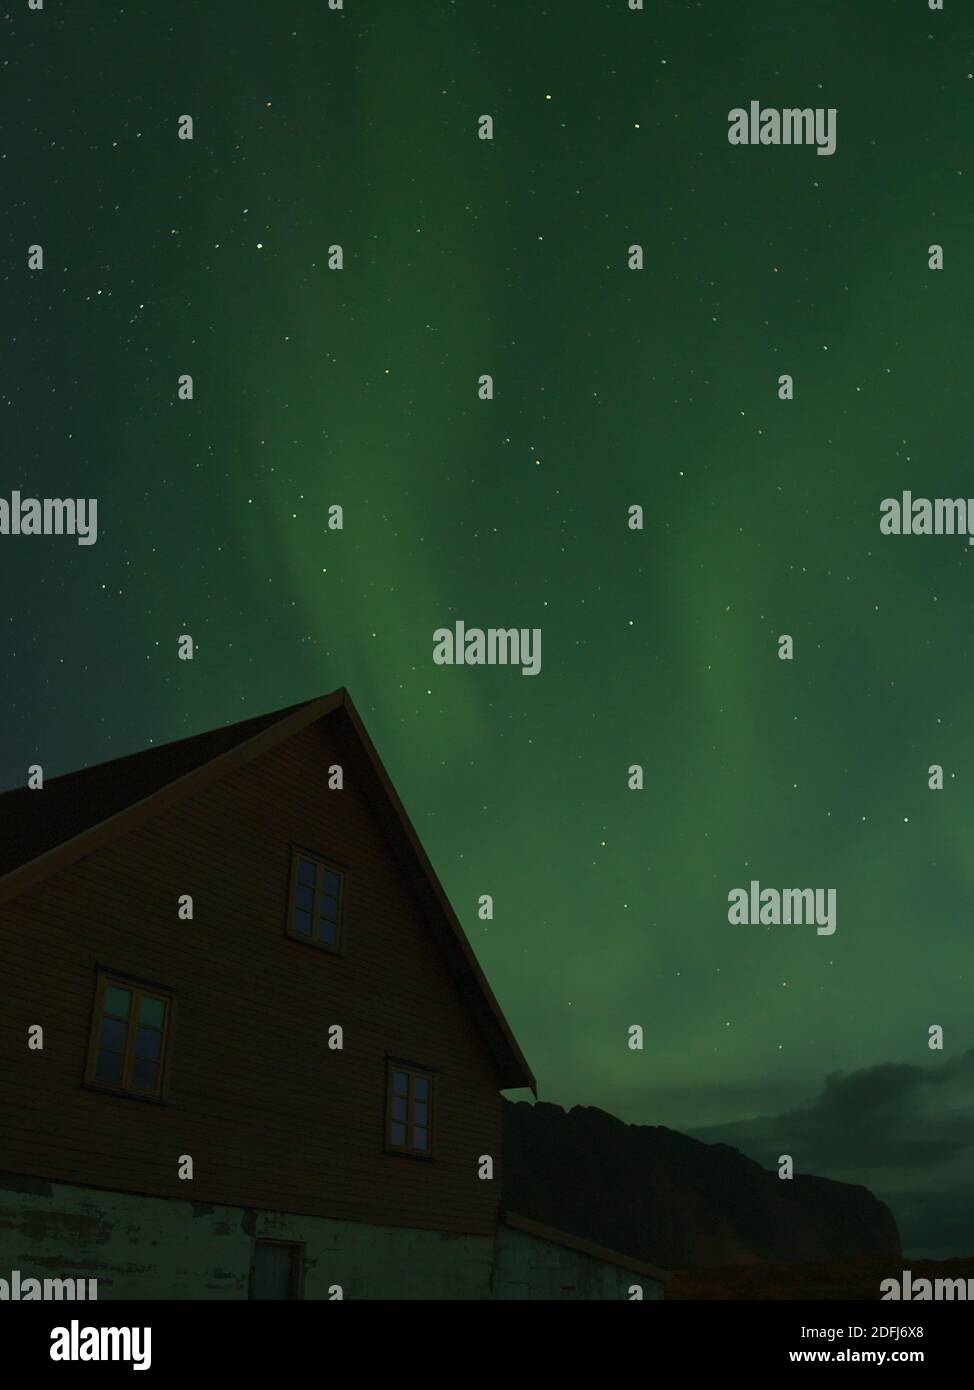 Splendida vista verticale del cielo notturno con luci polari luminose verdi (aurora borealis) sopra la vecchia casa sull'isola di Vestvågøy, Lofoten, Norvegia. Foto Stock